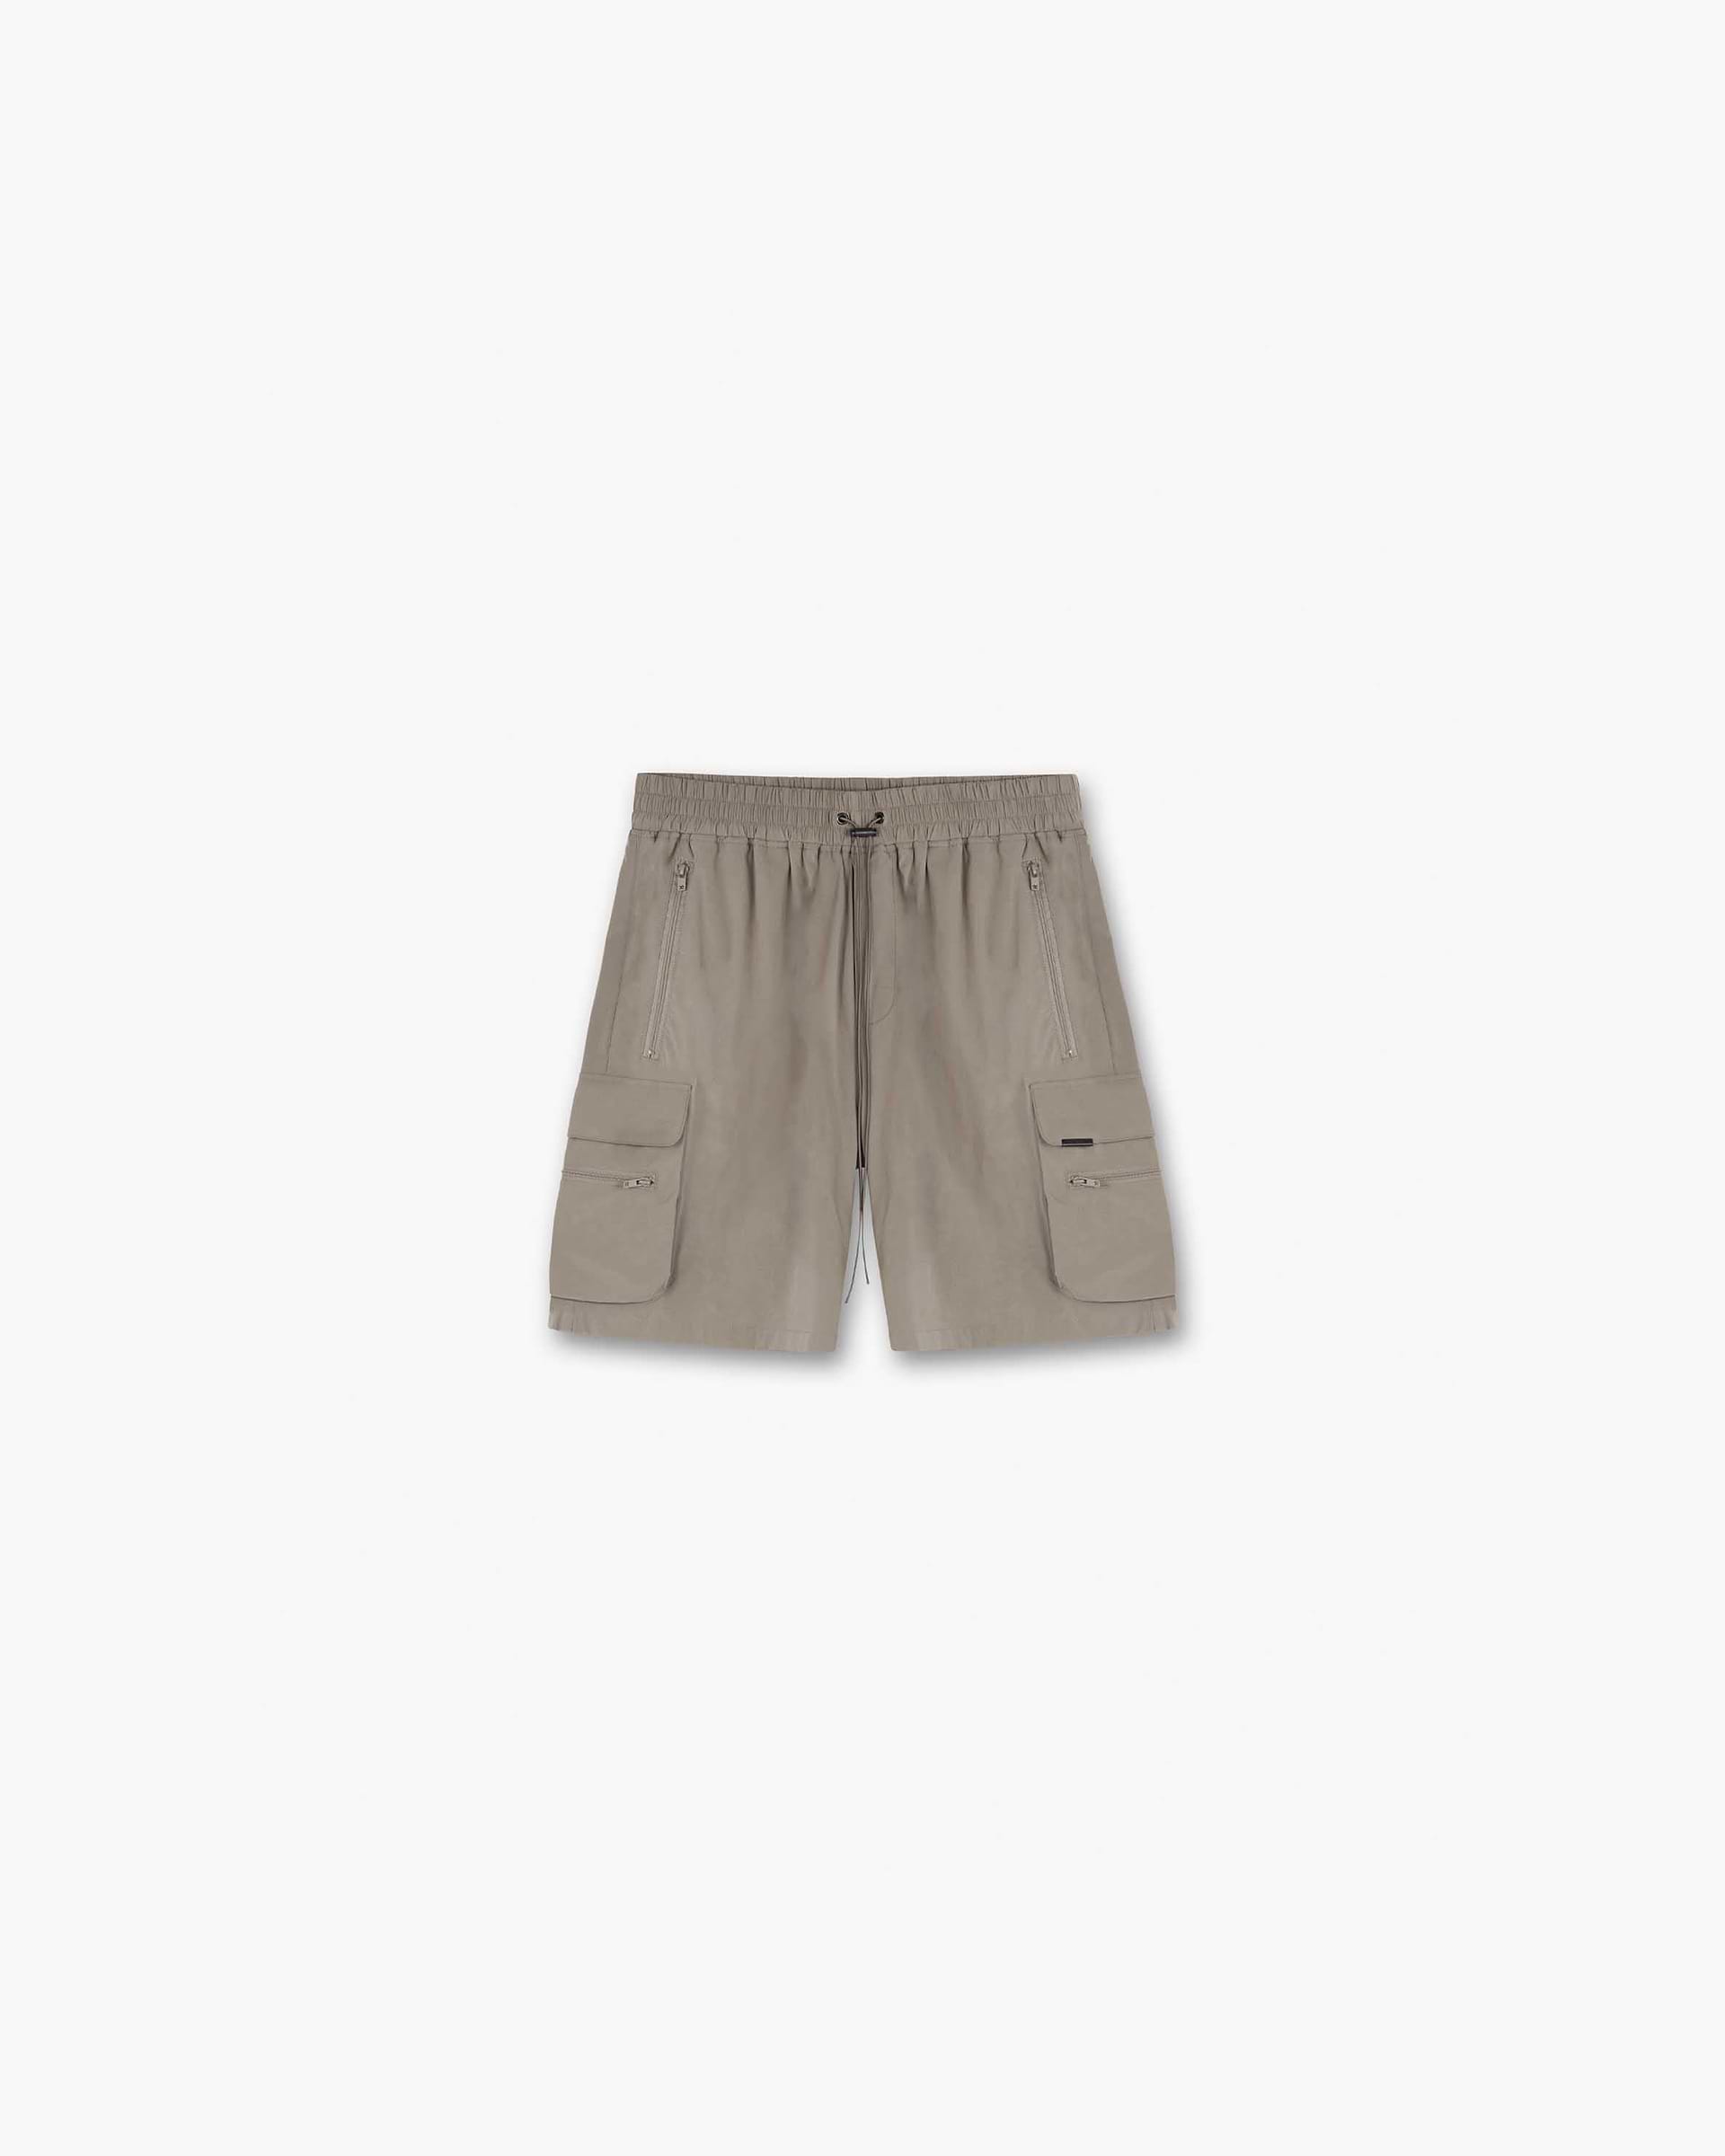 247 Shorts | Taupe Shorts 247 | Represent Clo